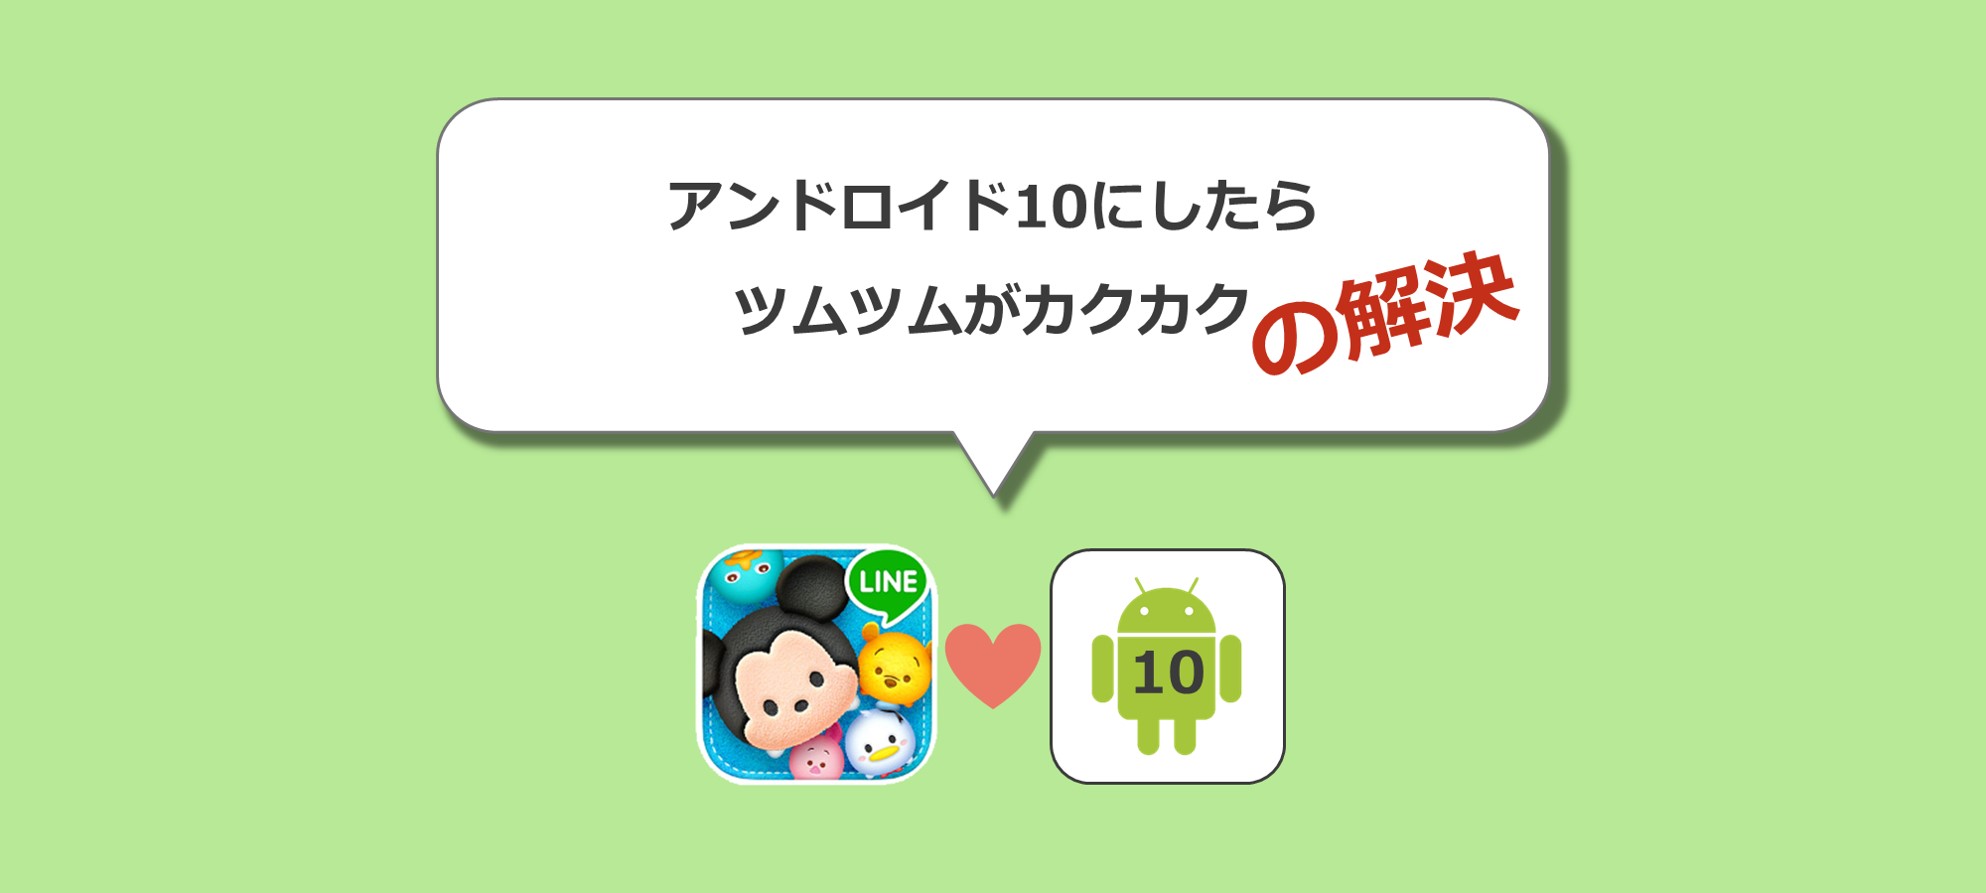 もの 商標 持ってる ツムツム Android Iphone P Suzuka Jp